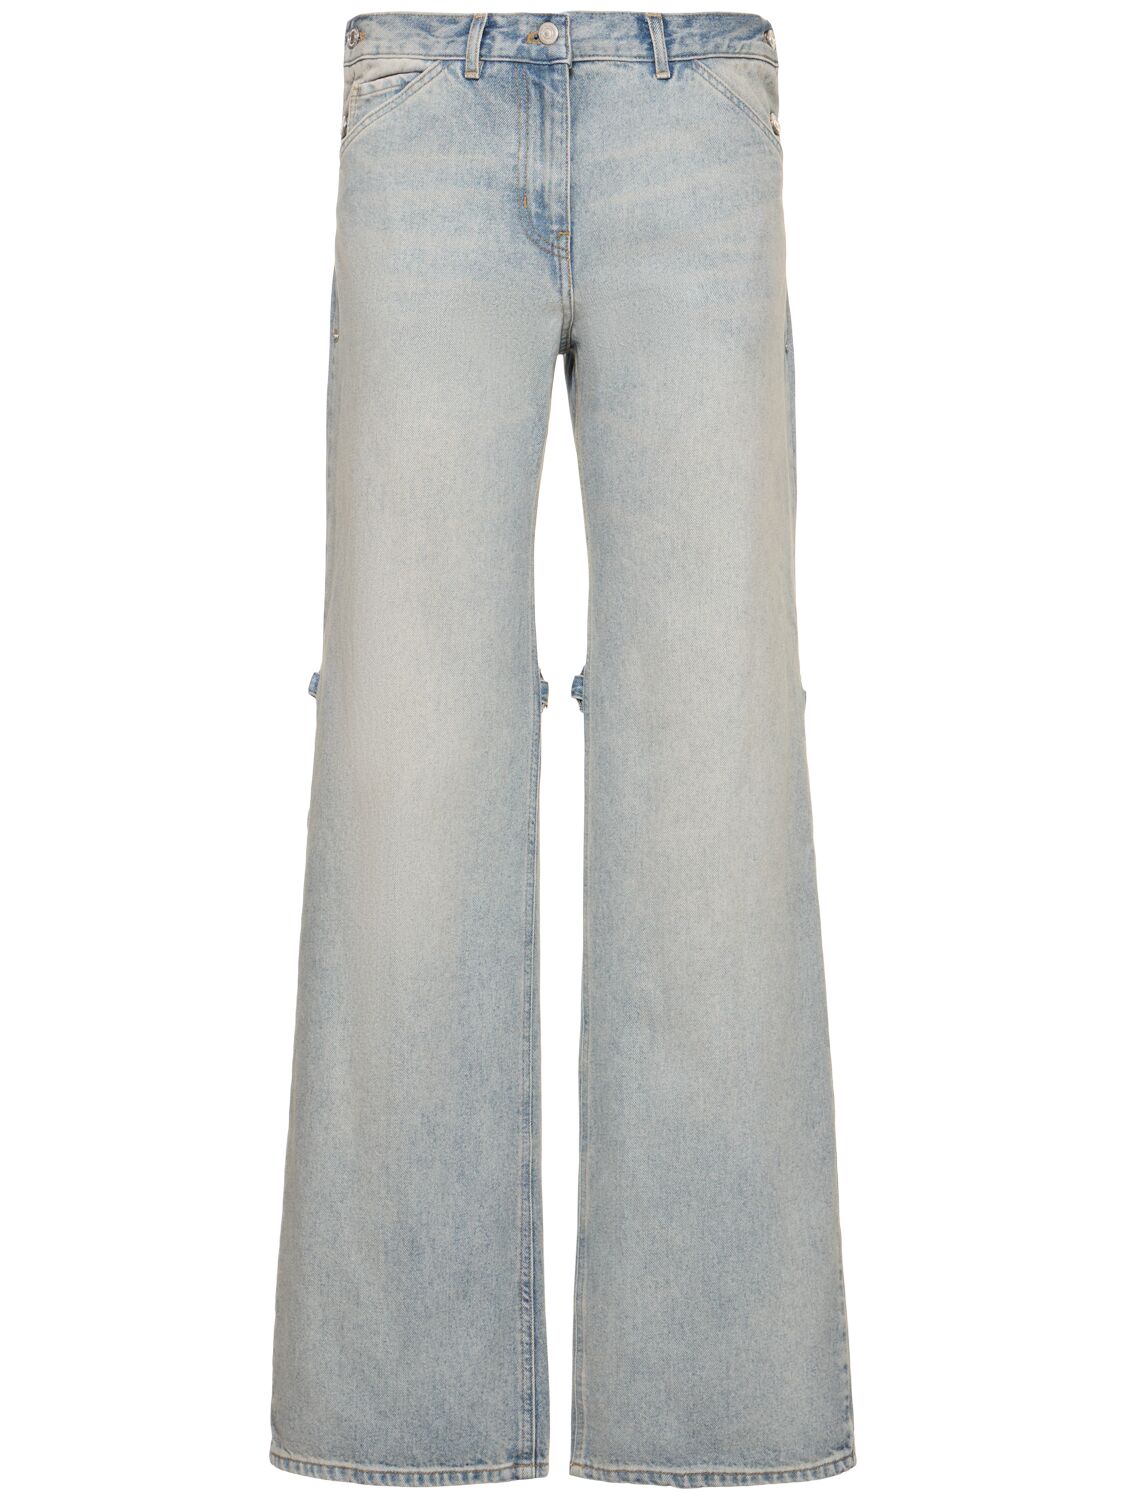 Sailor Baggy Denim Cotton Jeans